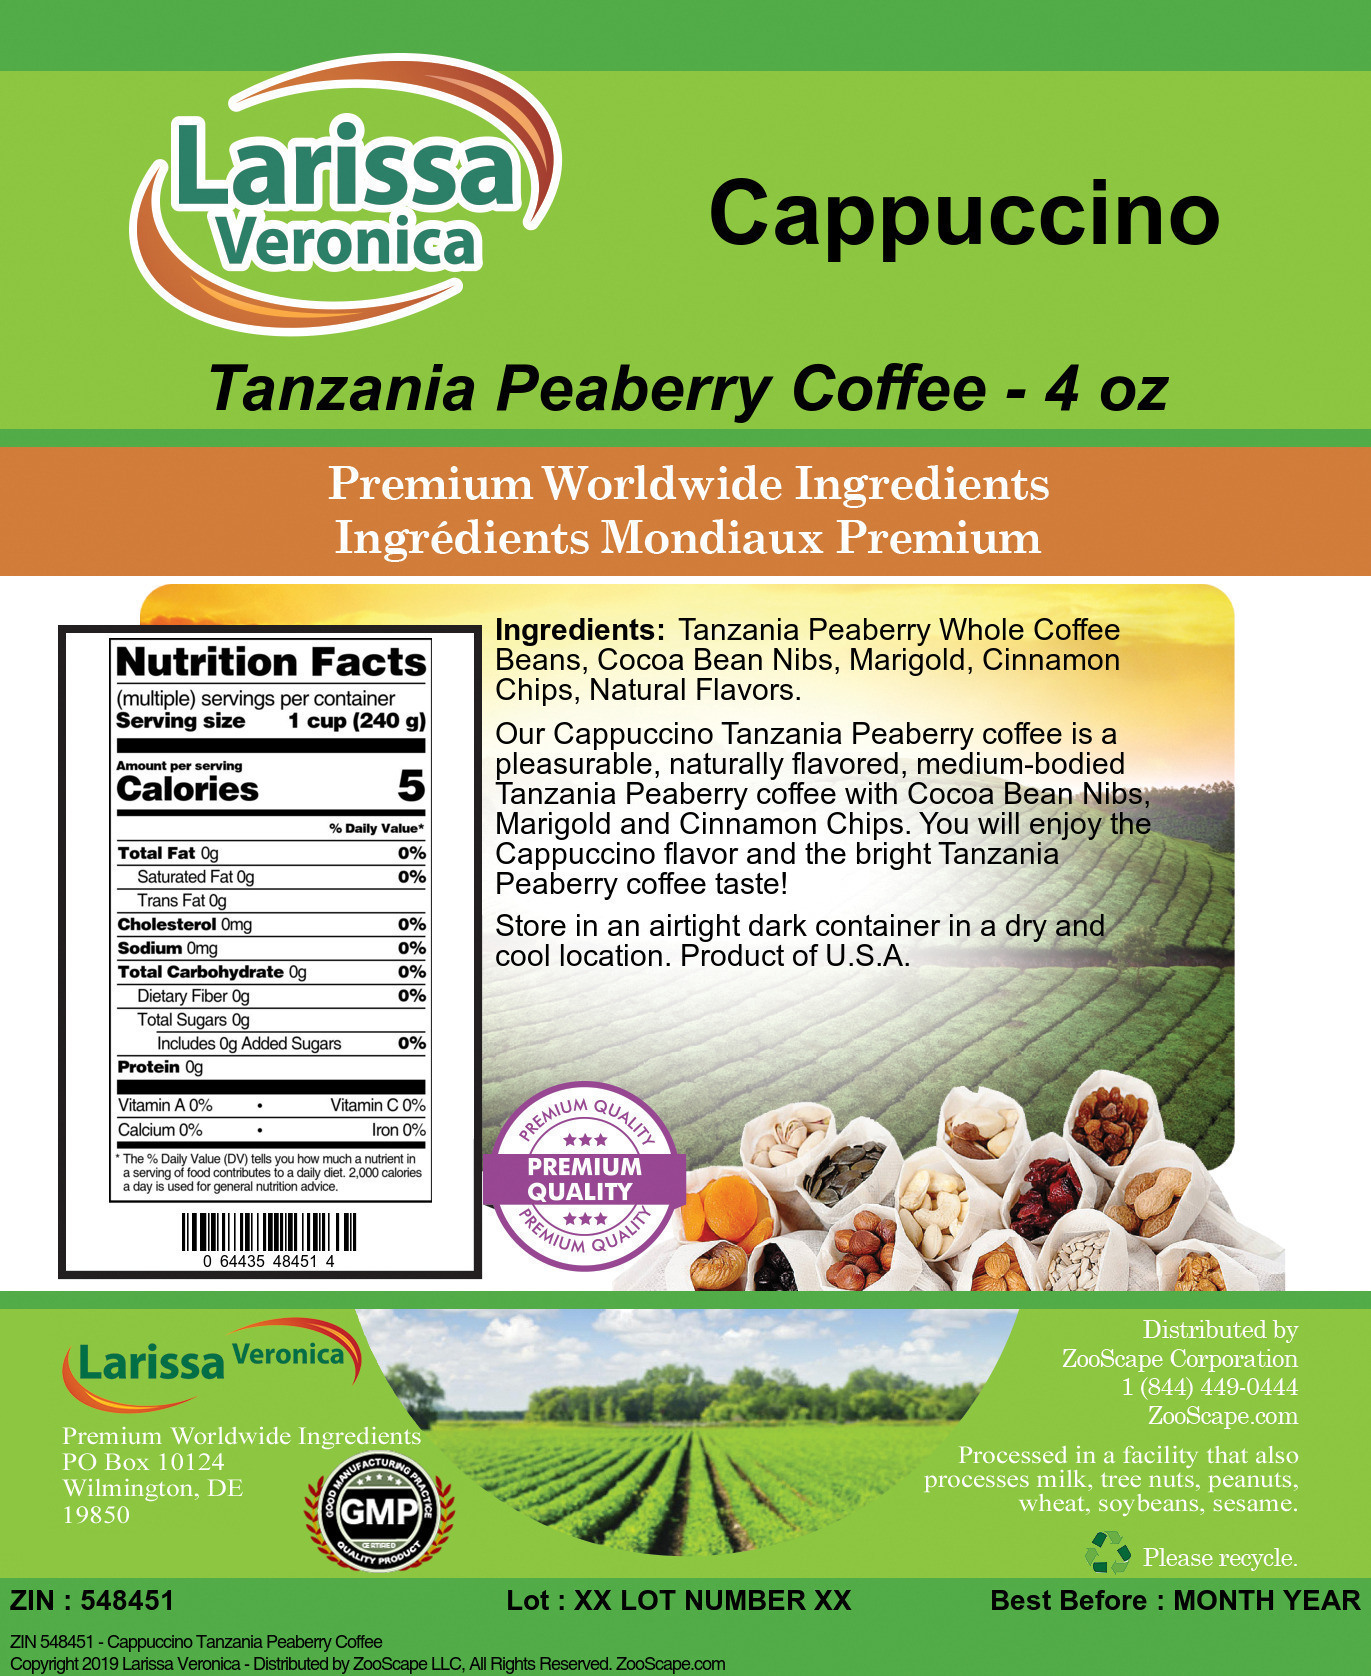 Cappuccino Tanzania Peaberry Coffee - Label